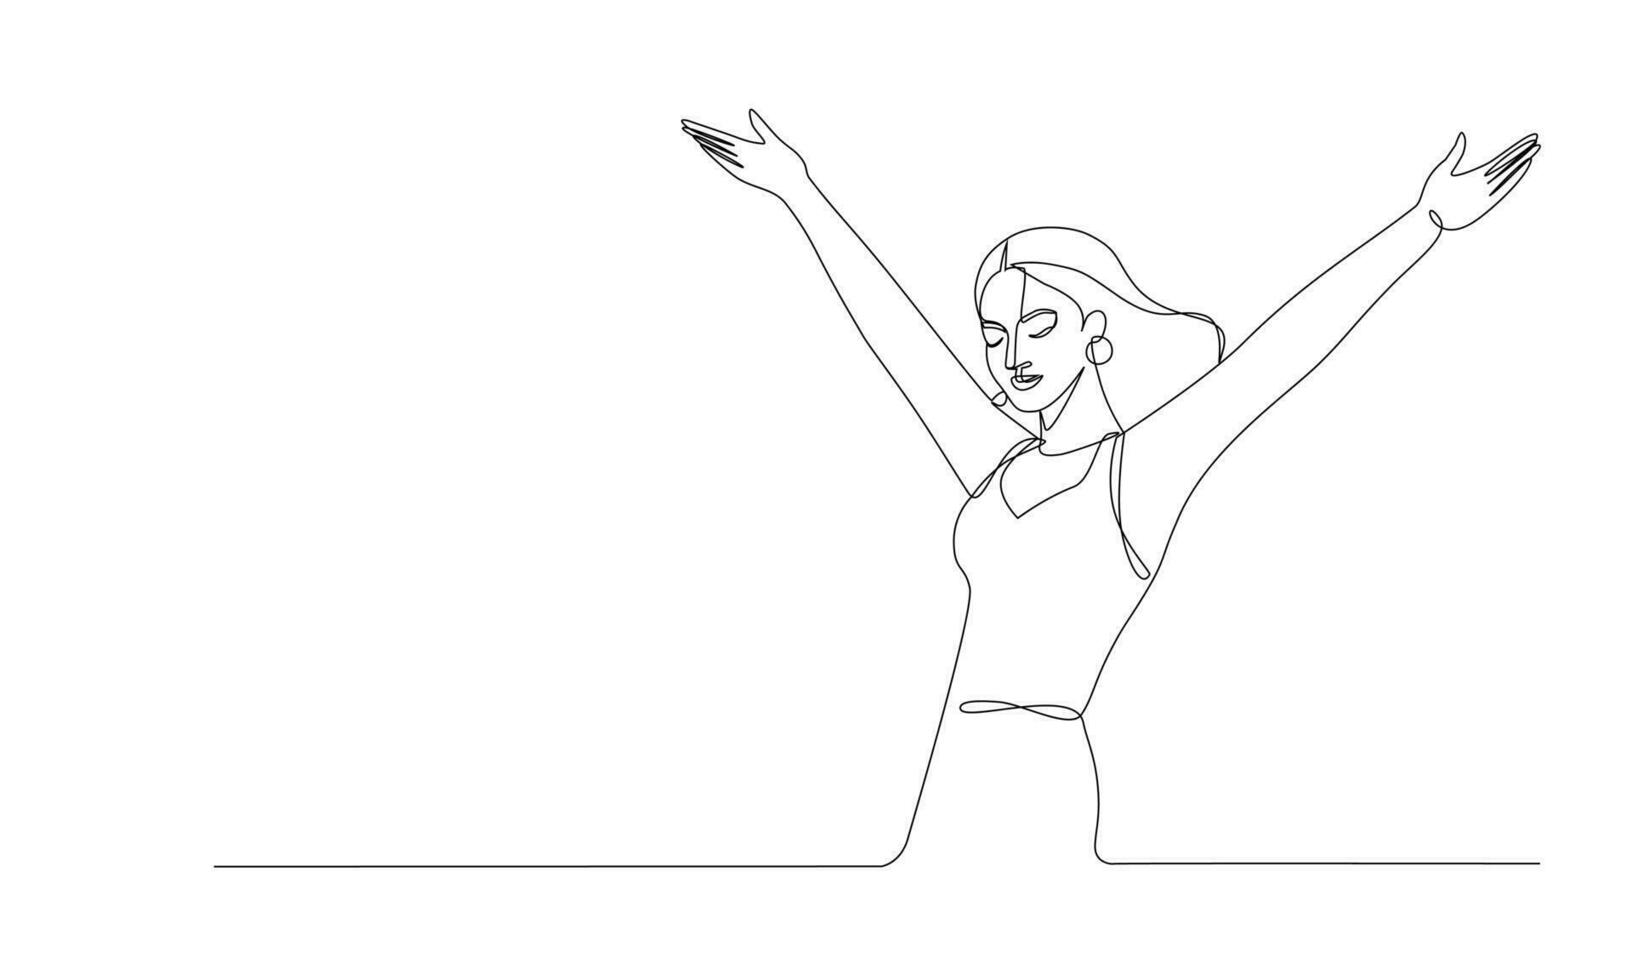 ett linje konst illustration av en kvinna med Uppfostrad händer i en gest av hälsning eller slut av en prestanda, dansa, glad uttryck, firande av kvinnlighet, upplyftande energi, medium skott vektor